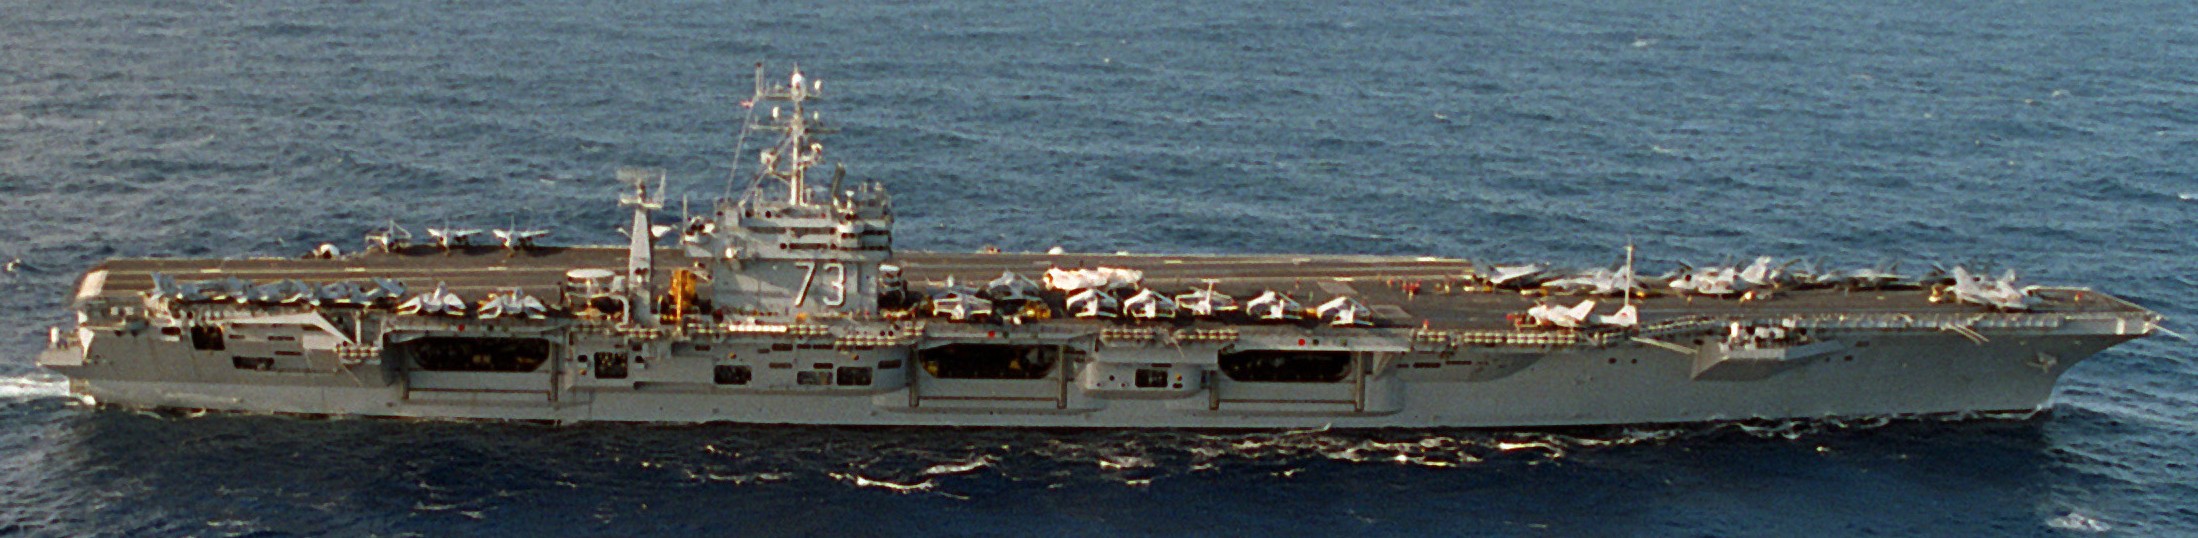 cvn-73 uss george washington nimitz class aircraft carrier air wing cvw-7 fleetex 1994 66